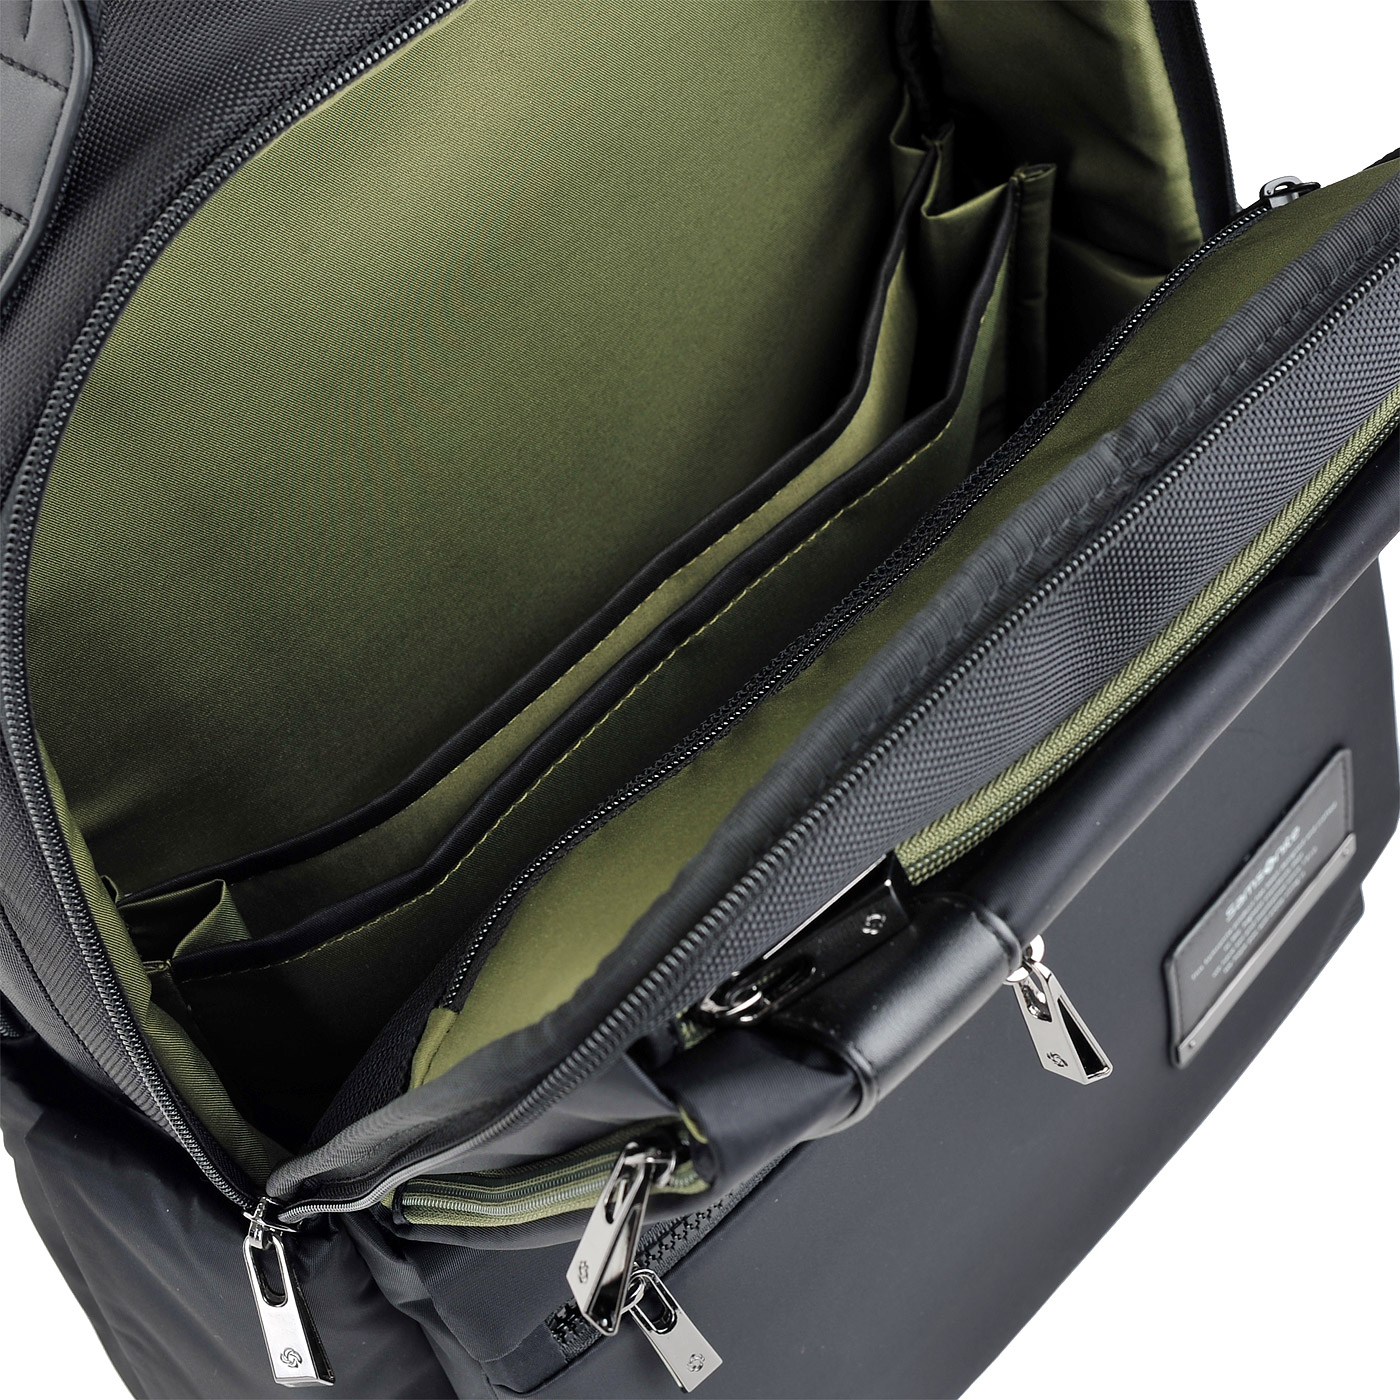 Вместительный рюкзак для ноутбука Samsonite Openroad